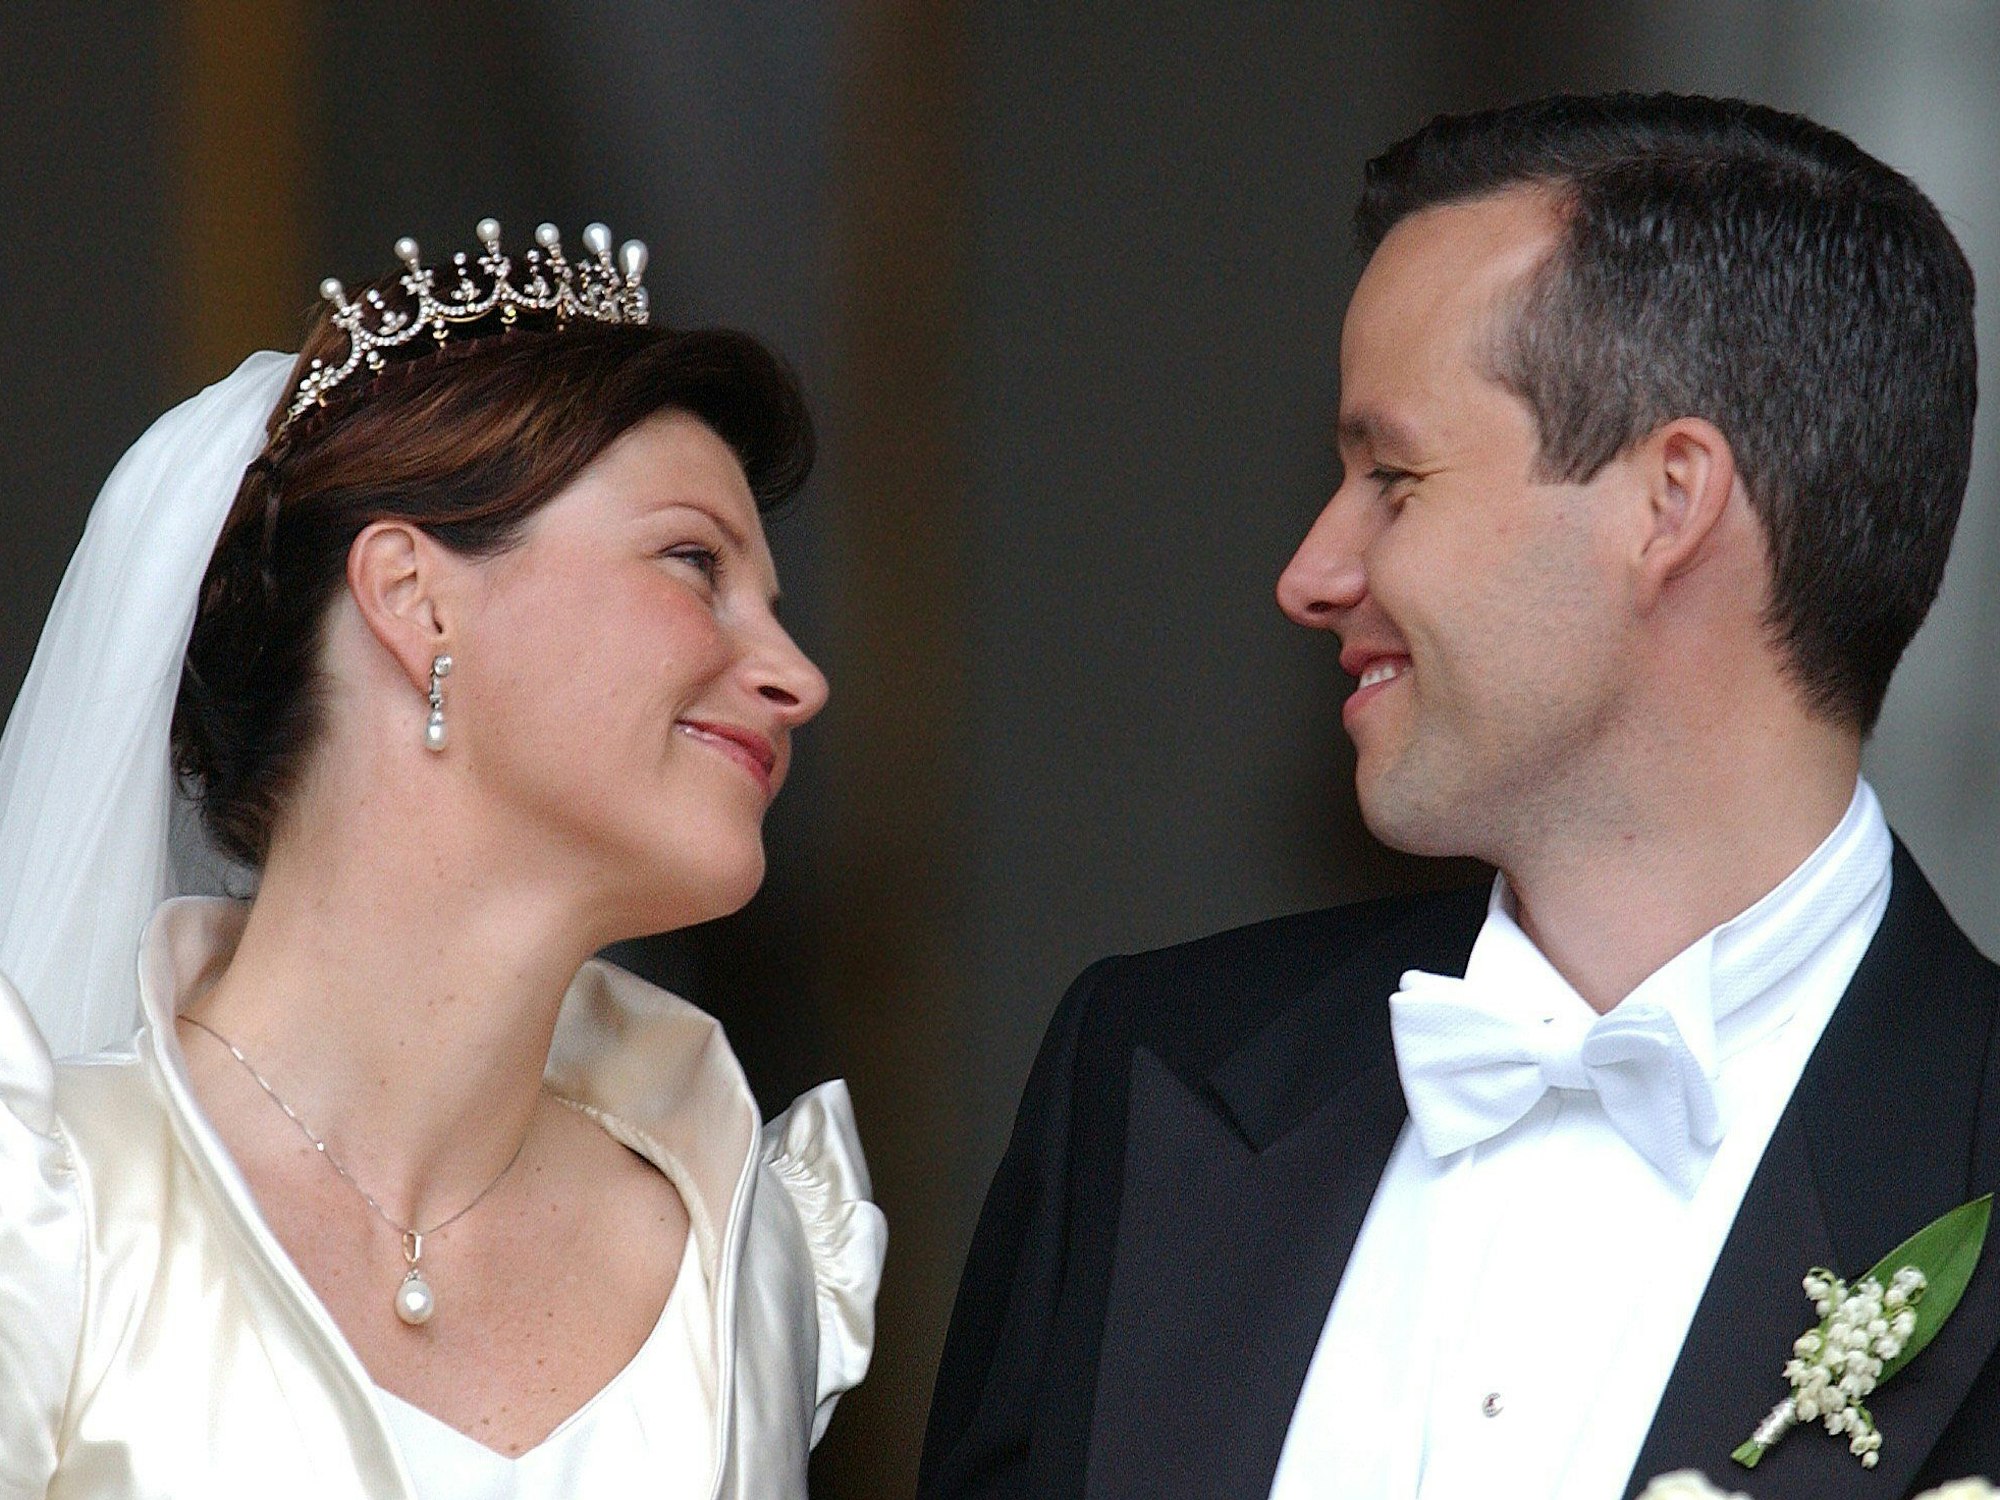 Minuten nach ihrer Trauung im Mai 2002 himmeln sich die norwegische Prinzessin Märtha-Louise und ihr Mann Ari Behn in Trondheim förmlich an.